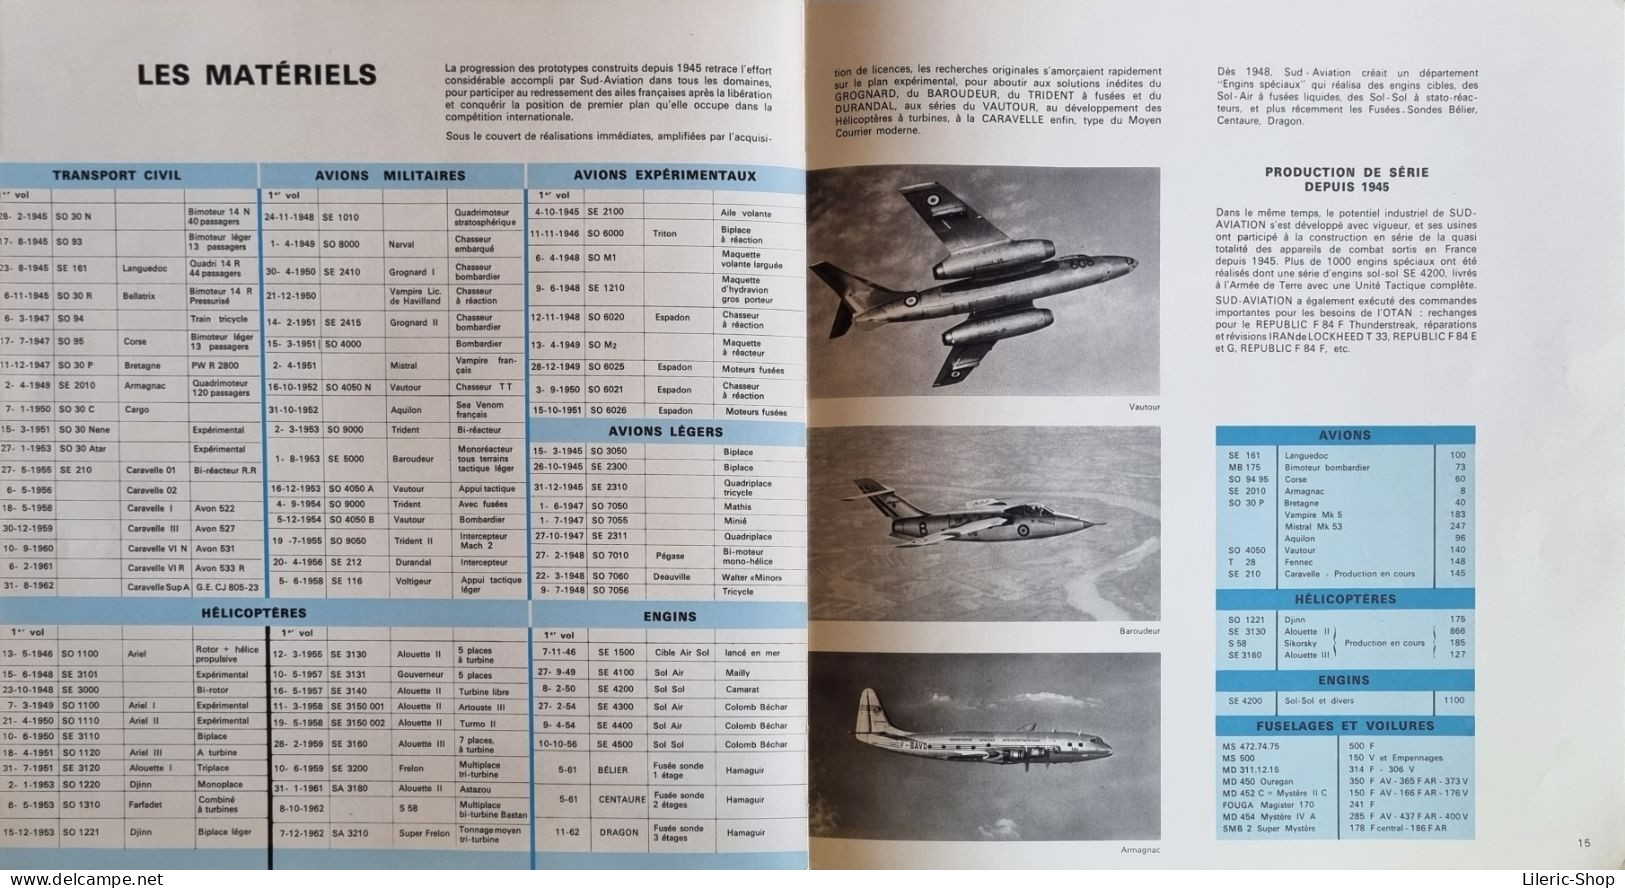 MANUEL SUD-AVIATION DE 1963 - 68 PAGES PHOTOS DE DIEUZAIDE DOISNEAUX ET JOSSE NOEL 270x280